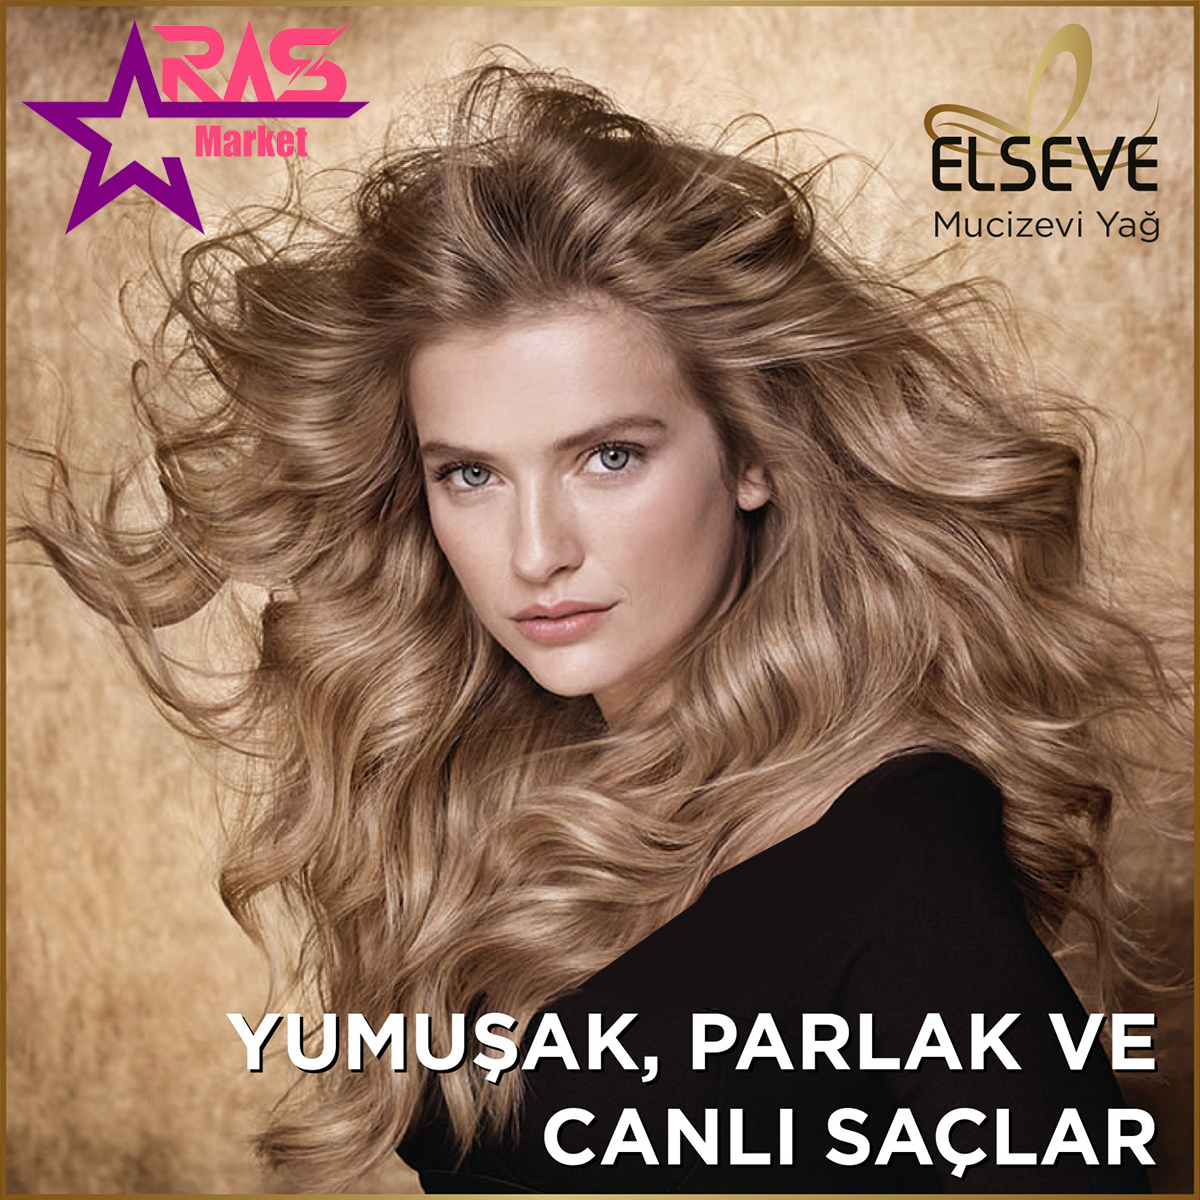 نرم کننده مو لورآل سری ELSEVE مدل 6Mucizevi Yağ مناسب موهای معمولی و خشک 375 میلی لیتر ، نرم کننده مو لورآل مخصوص موهای معمولی و خشک